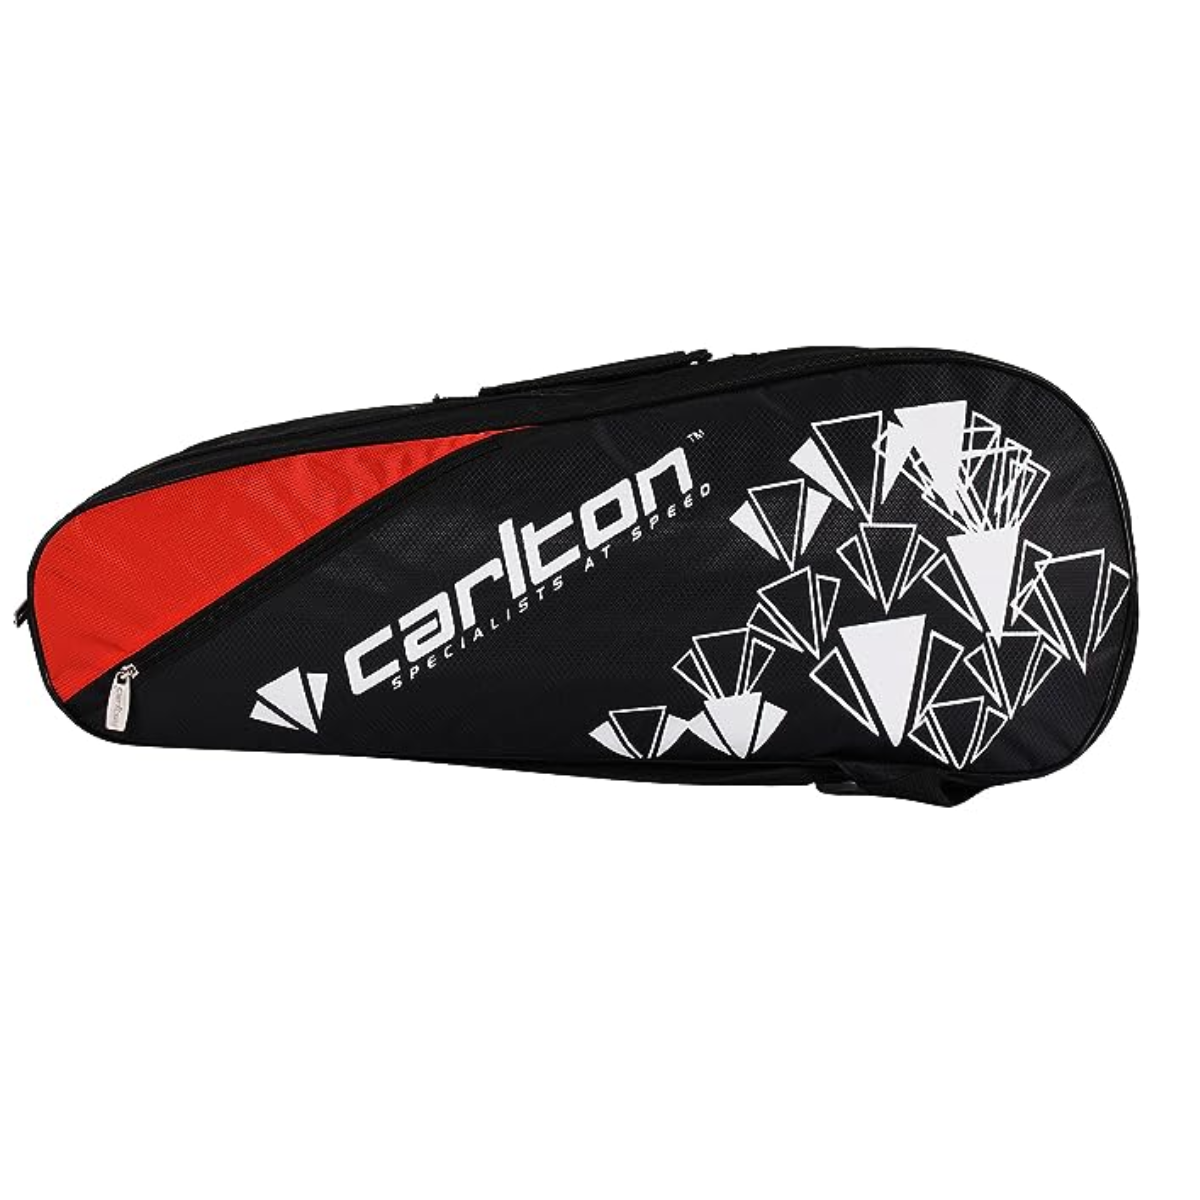 Carlton Vapour Trial 2 Compartment Badminton Kit Bag (Black/Red)